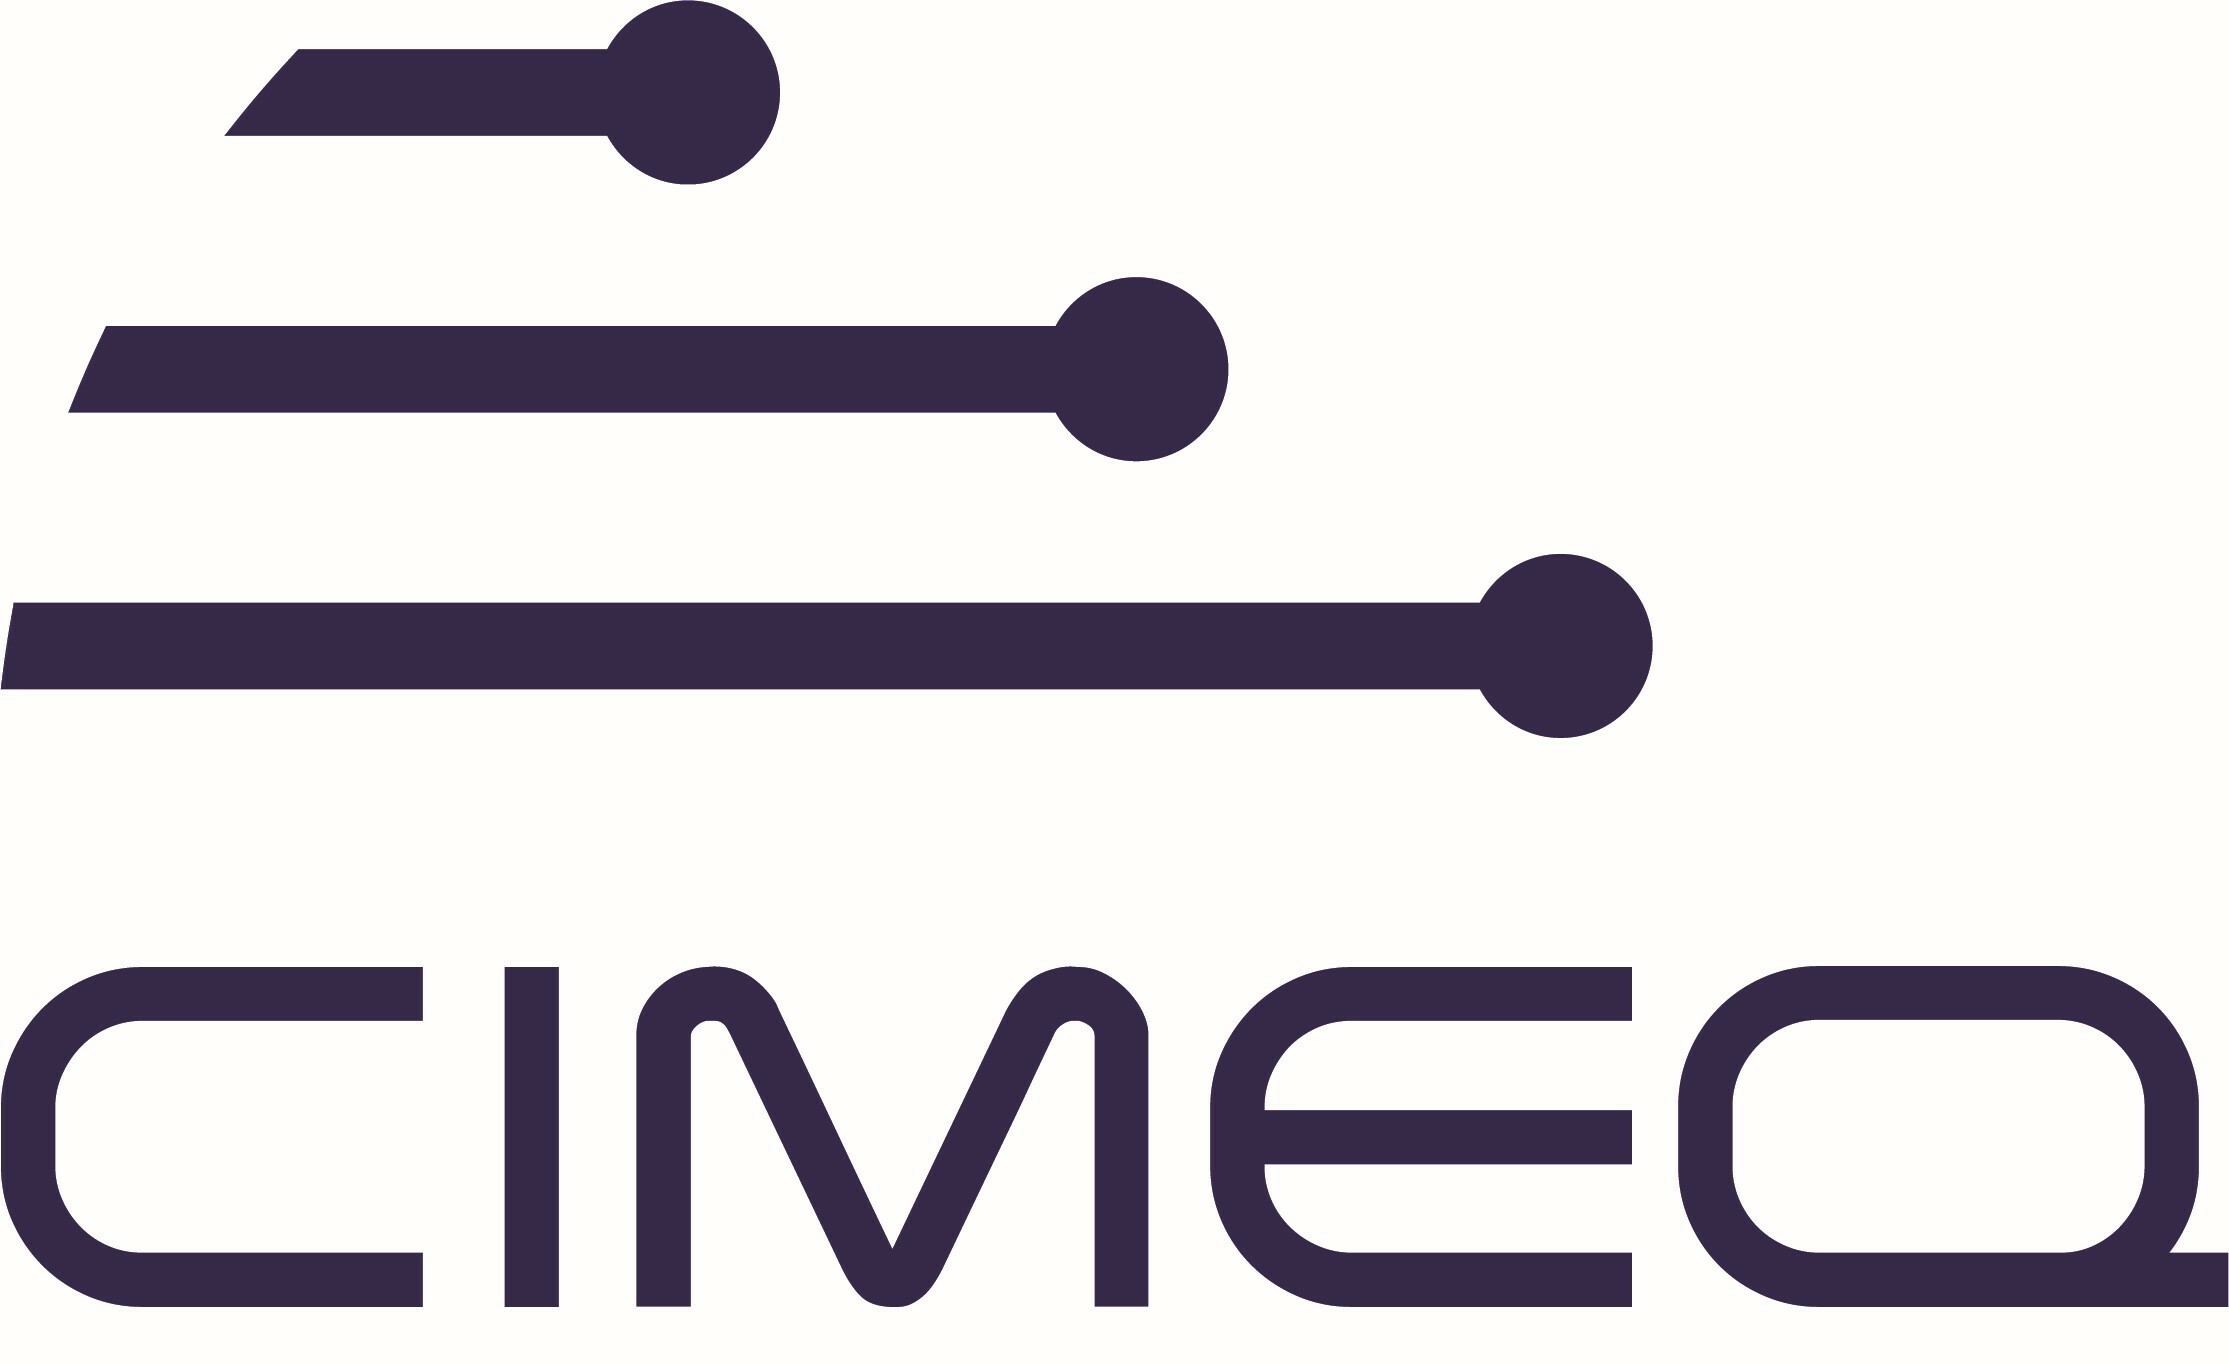 Logo CIMEQ4 X 2024